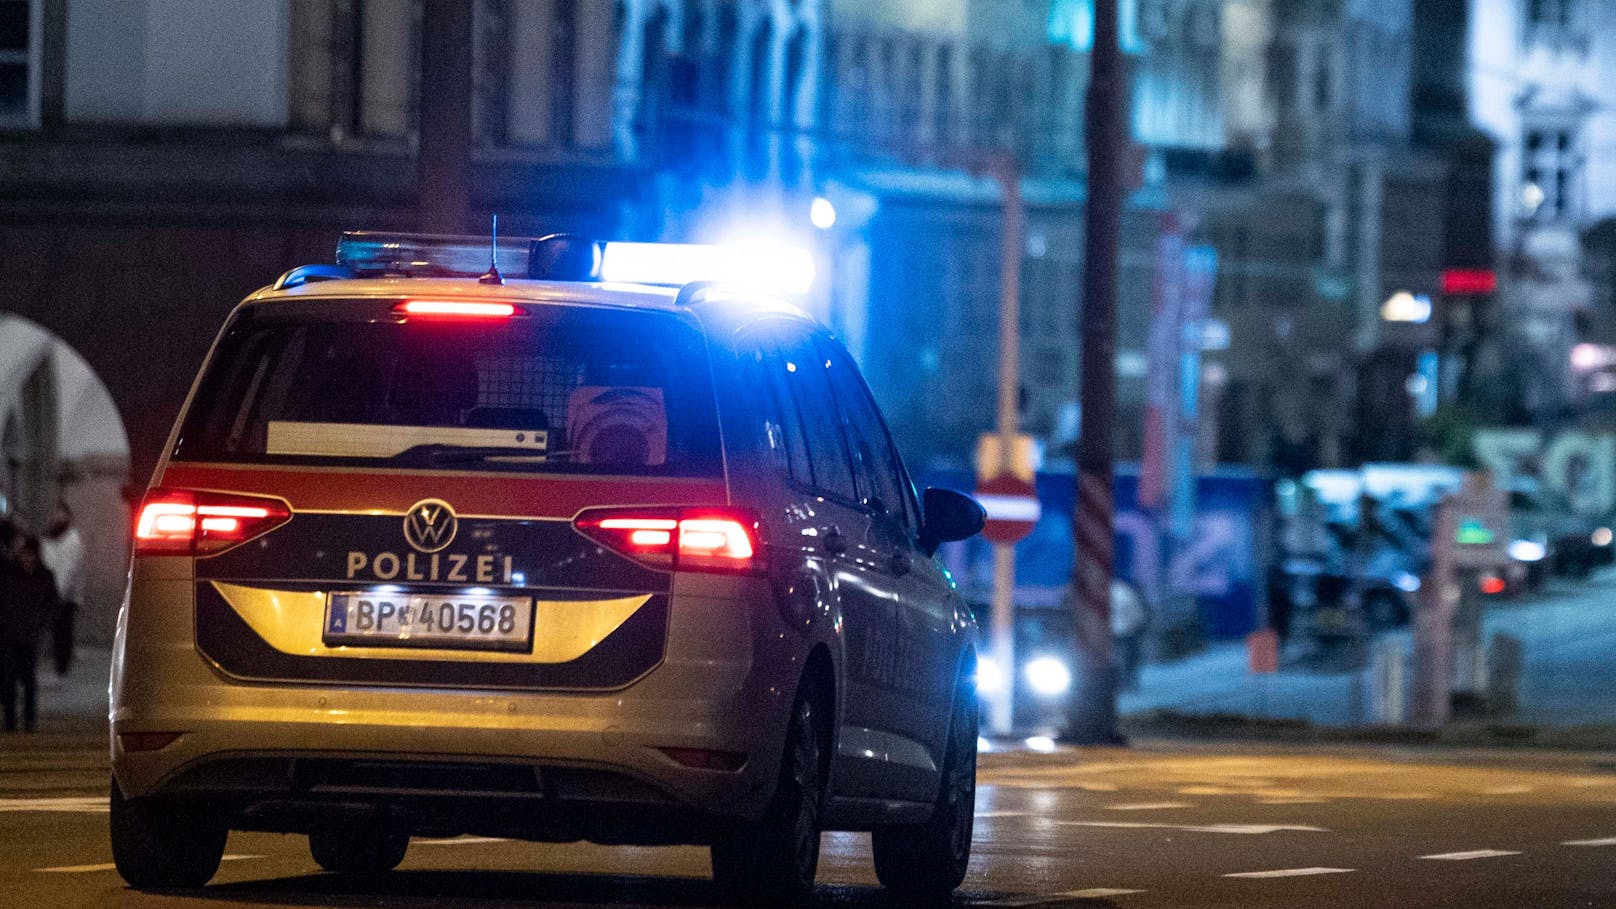 Passant sieht Mann in Wien und ruft sofort die Polizei